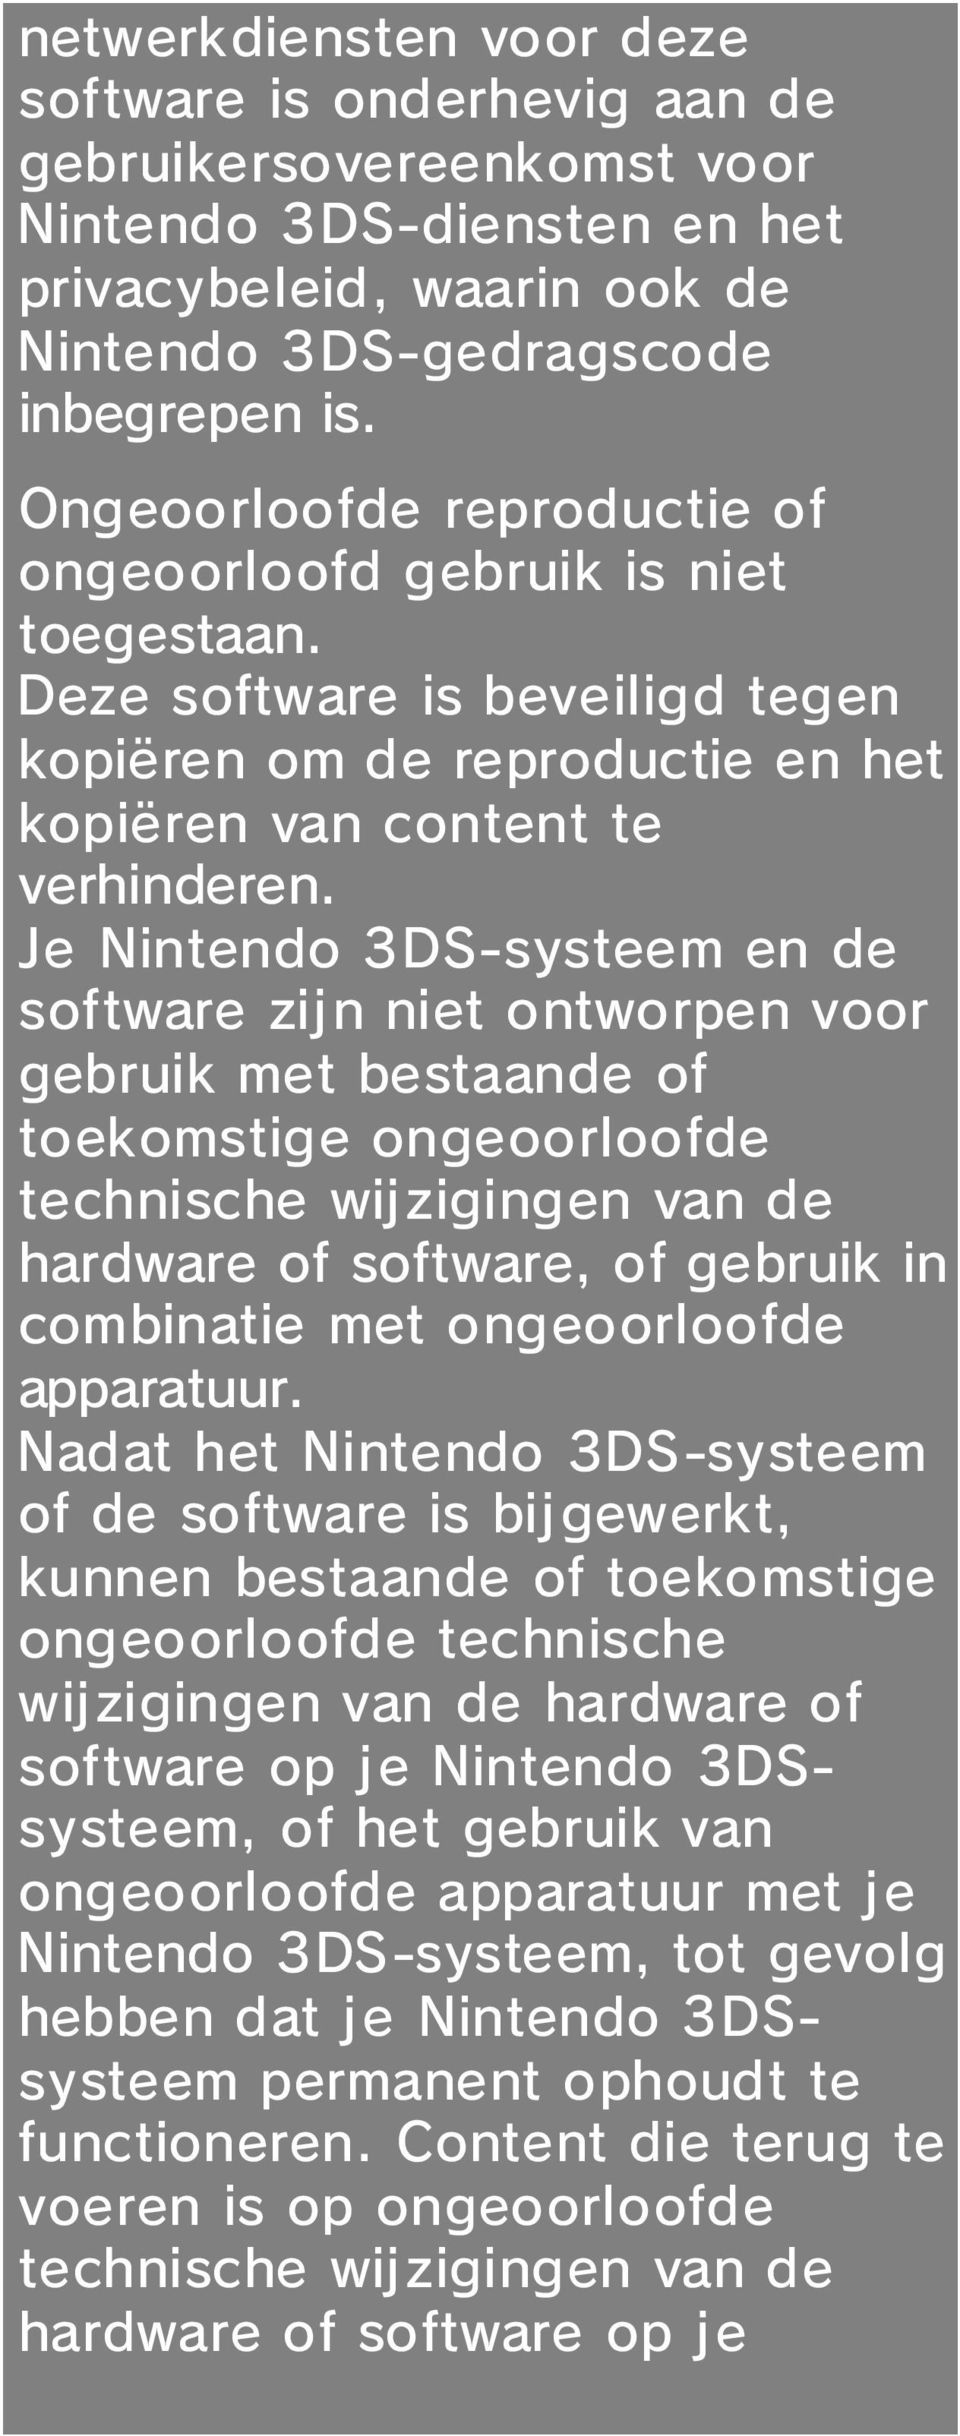 Je Nintendo 3DS-systeem en de software zij n niet ontworpen voor gebruik met bestaande of toekomstige ongeoorloofde technische wijzigingen van de hardware of software, of gebruik in combinatie met